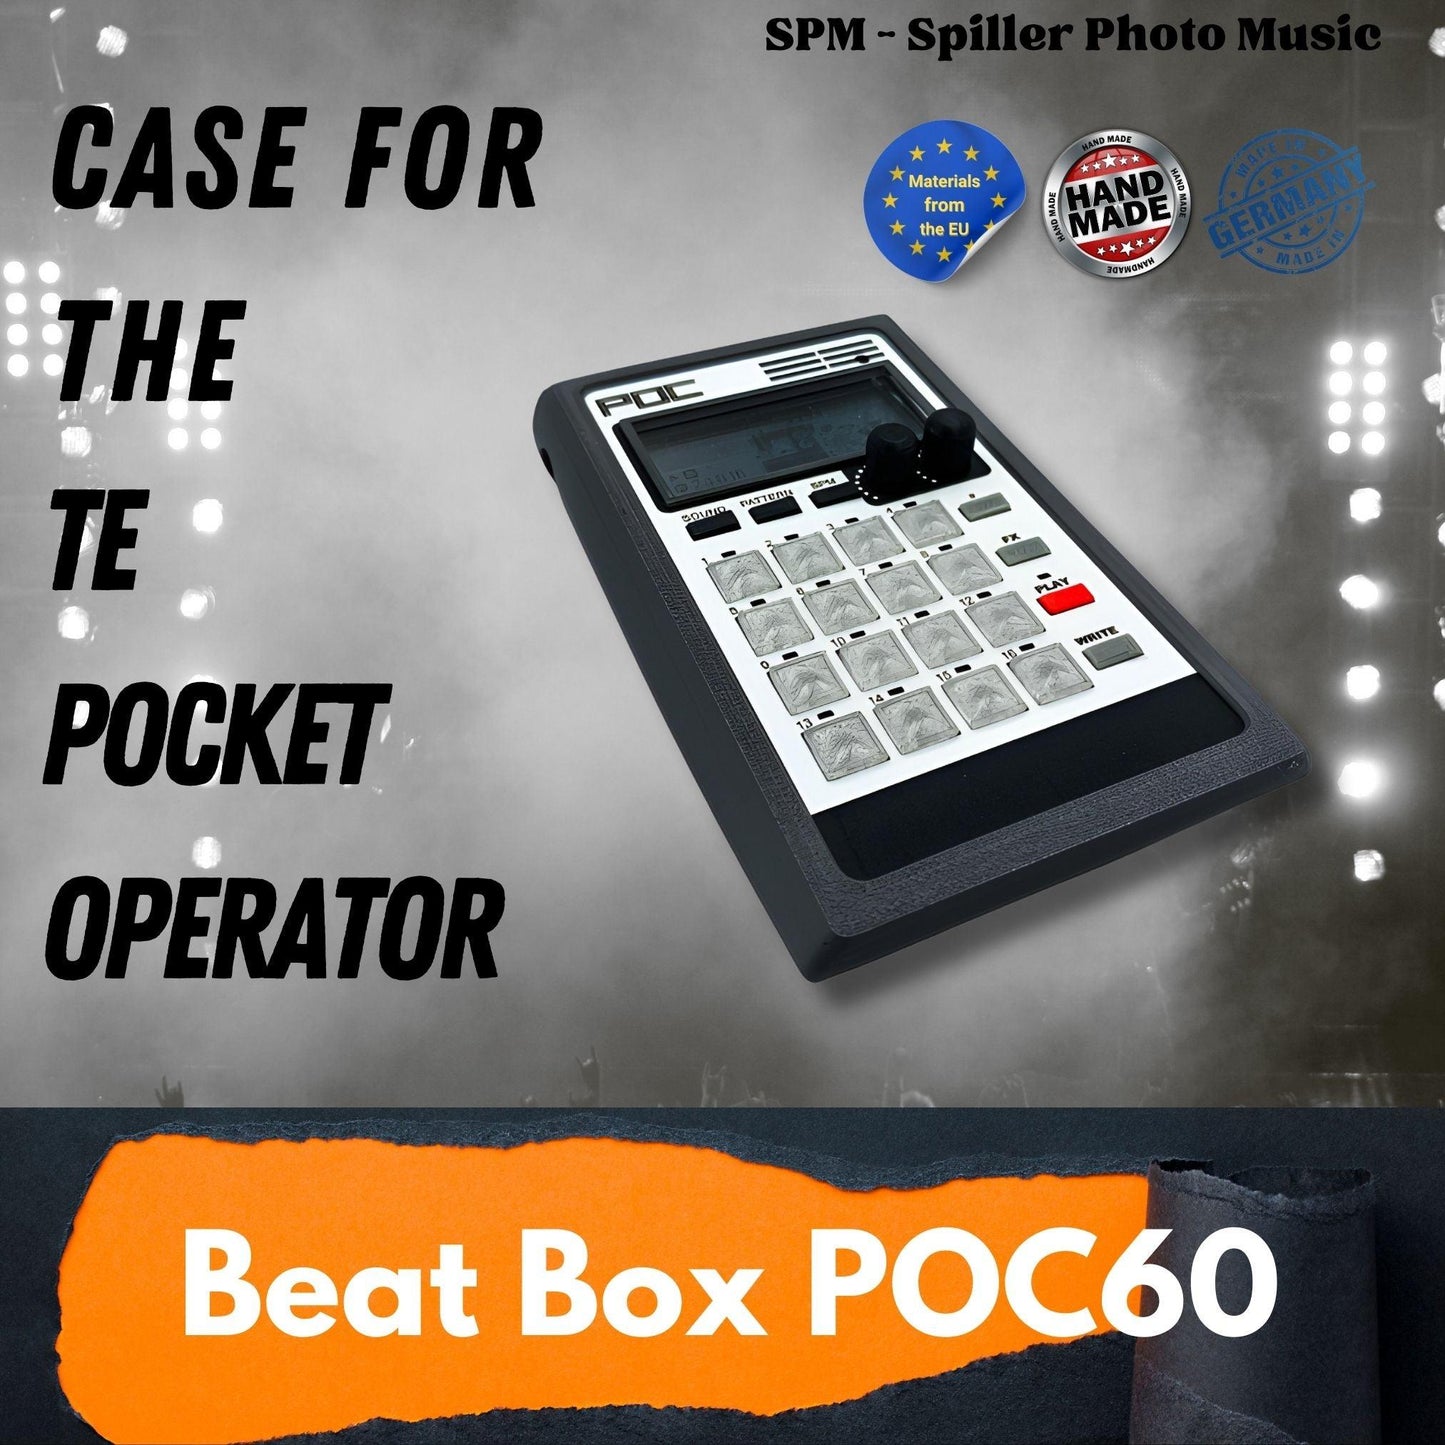 Beat Box POC - 3D gedrucktes Gehäuse für den Teenage Engineering Pocket Operator - spillerphoto